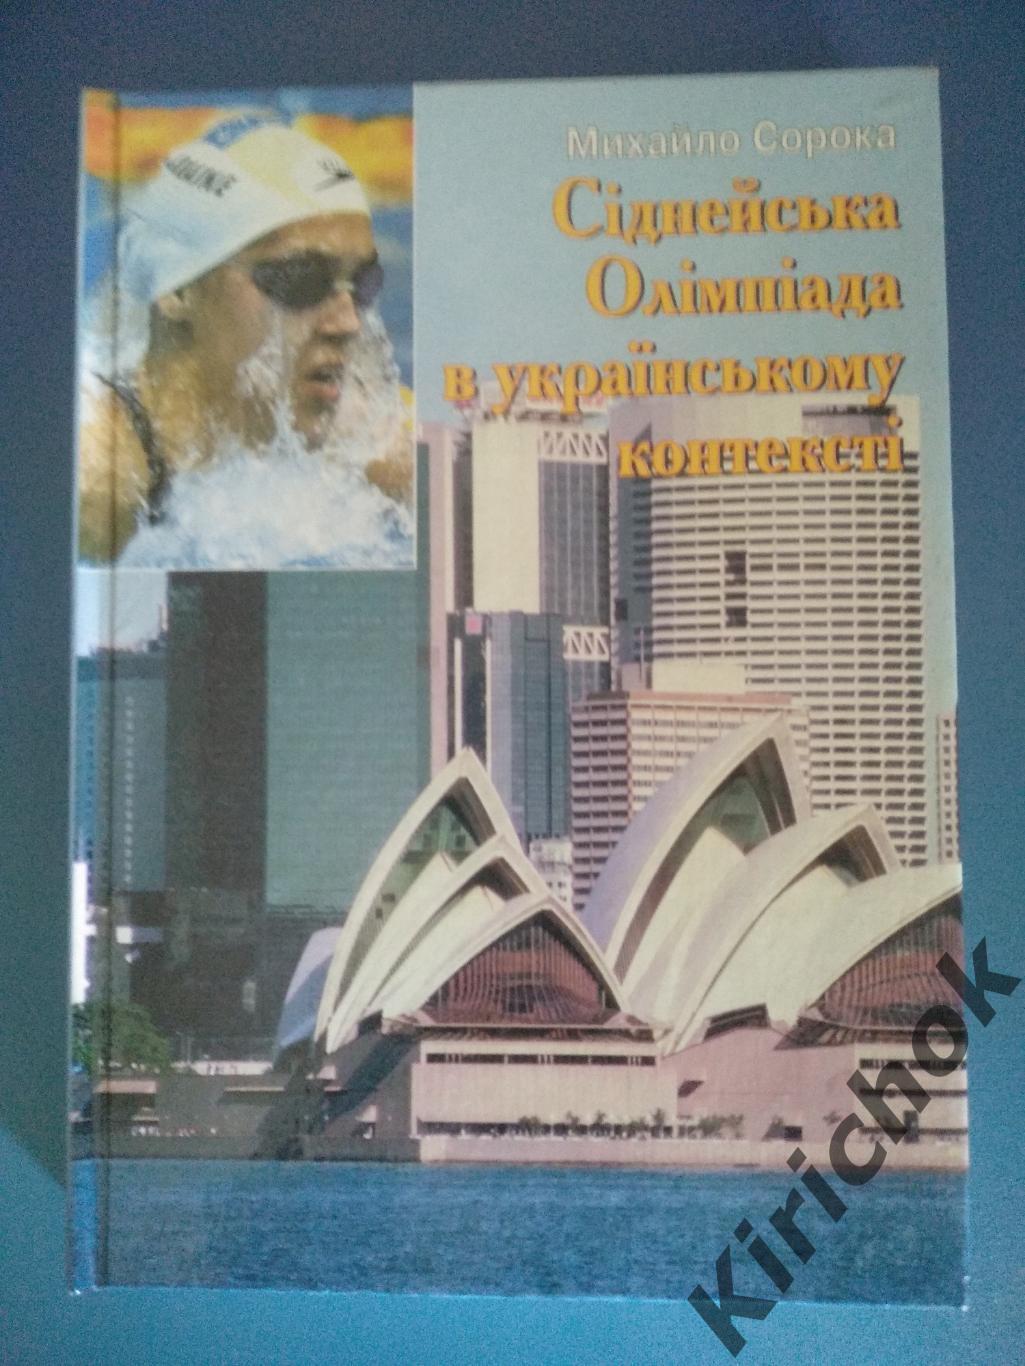 Книга: Издание НОК Украины. Сиднейская олимпиада в украинском контексте